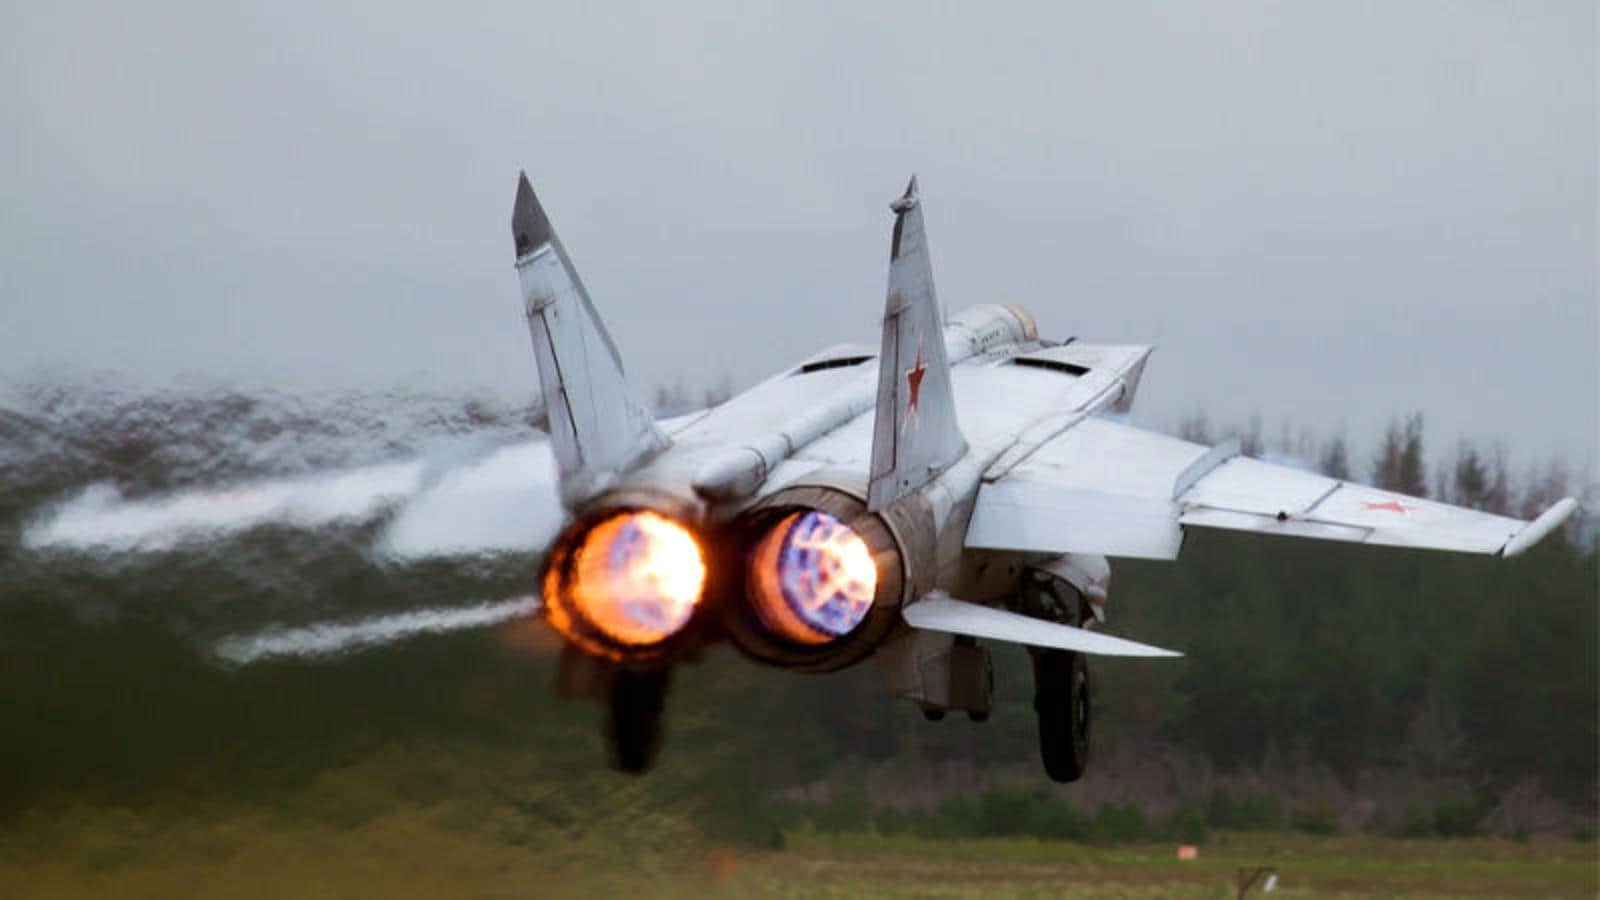 MiG-25. Voló por primera vez en 1964 y entro en servicio en las fuerzas aéreas soviéticas en 1970.Tiene una velocidad máxima de 2.83 Mach, pudiendo alcanzar 3,2 Mach aunque los motores no podrían soportarlo mucho tiempo